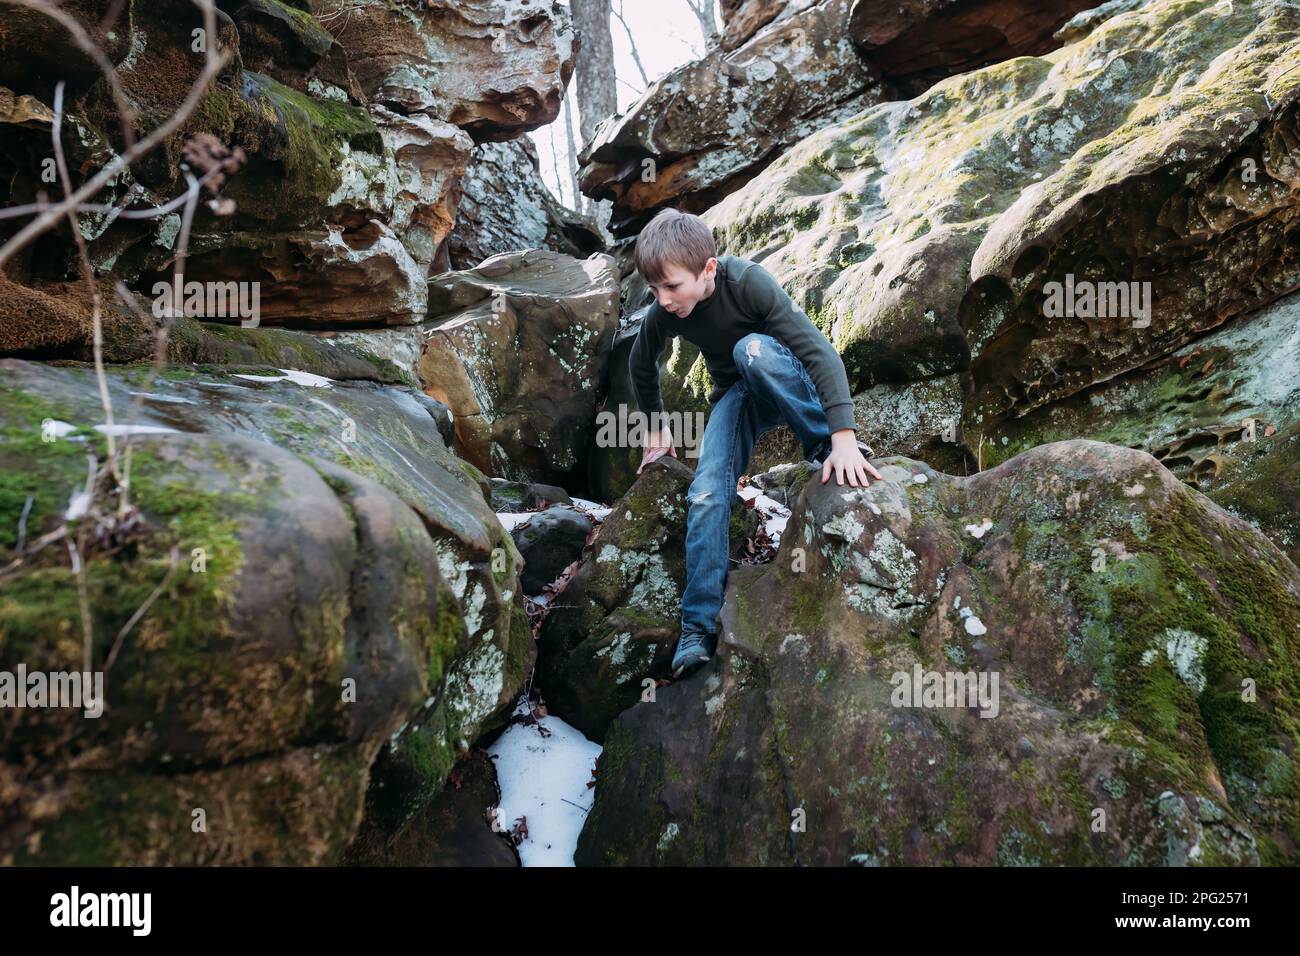 Un garçon se brouille sur les rochers lors d'une randonnée en forêt Banque D'Images